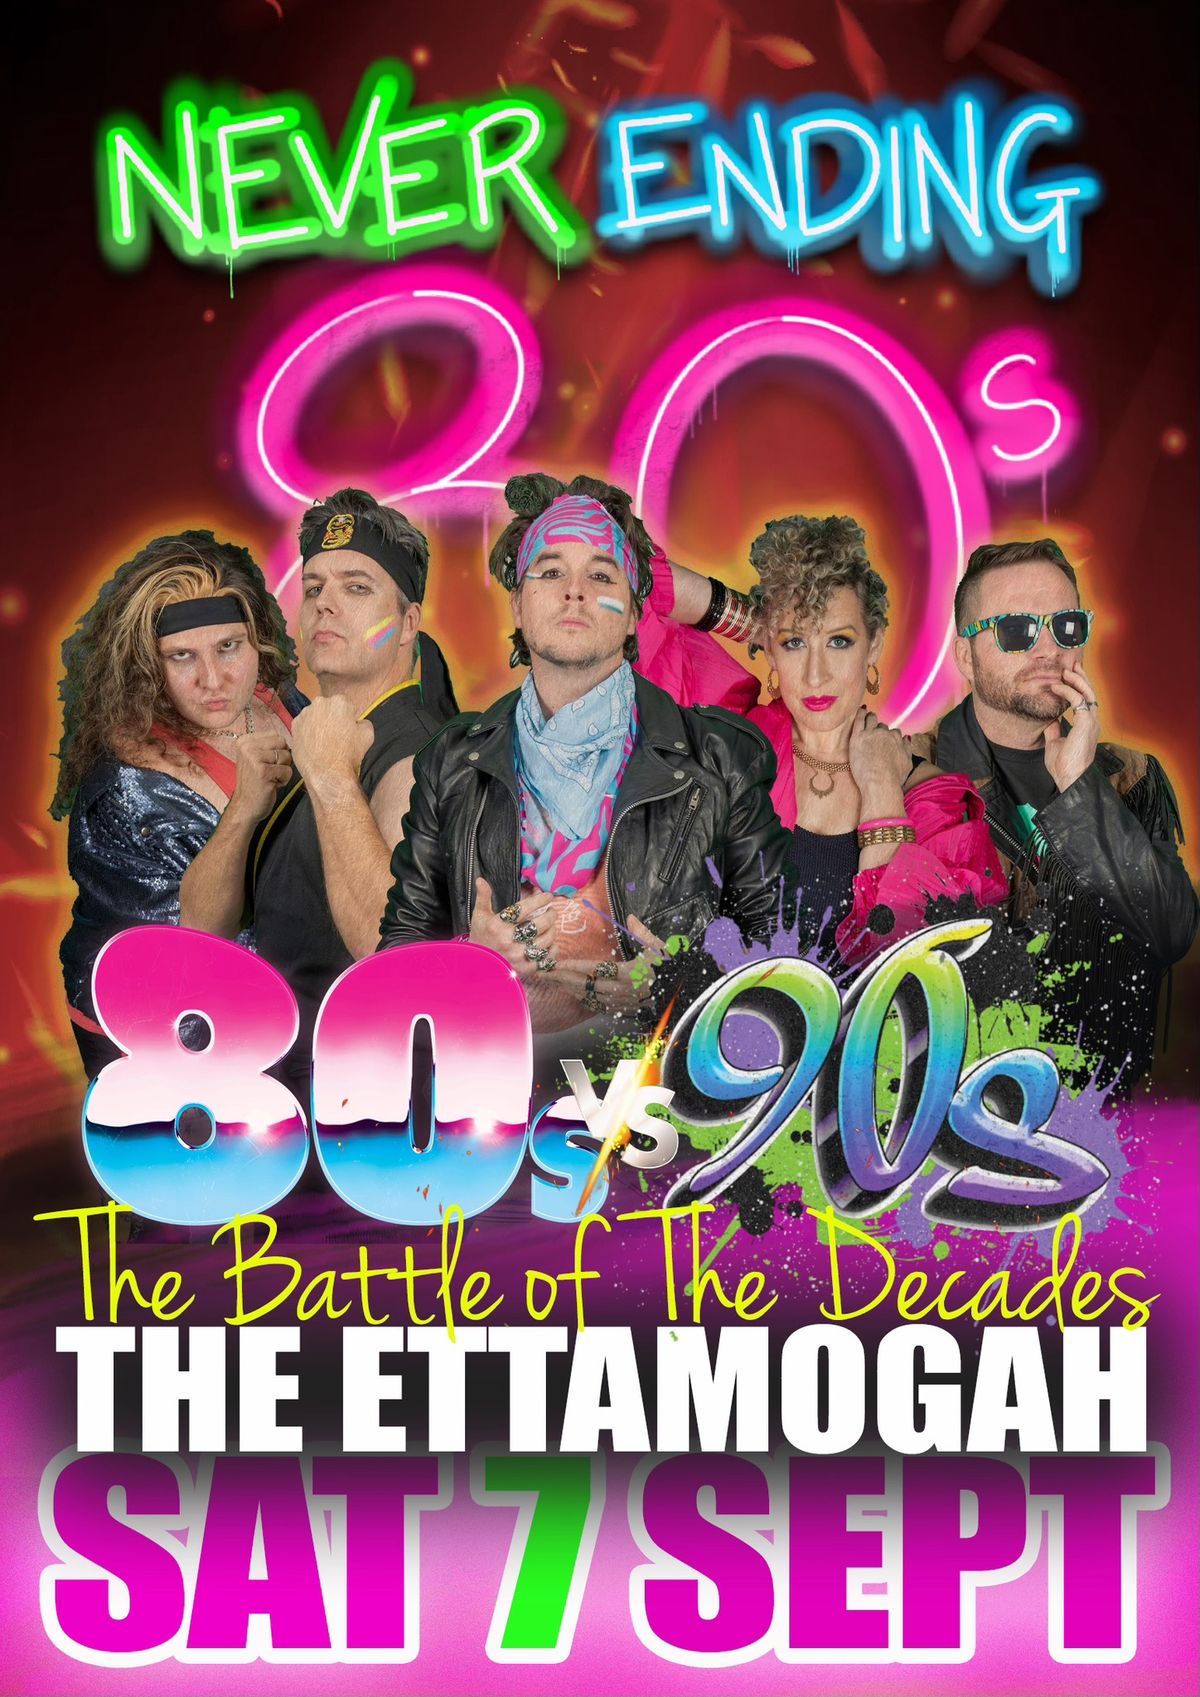 Never Ending 80s v 90s Party - Ettamogah Hotel Kellyville Ridge, NSW)